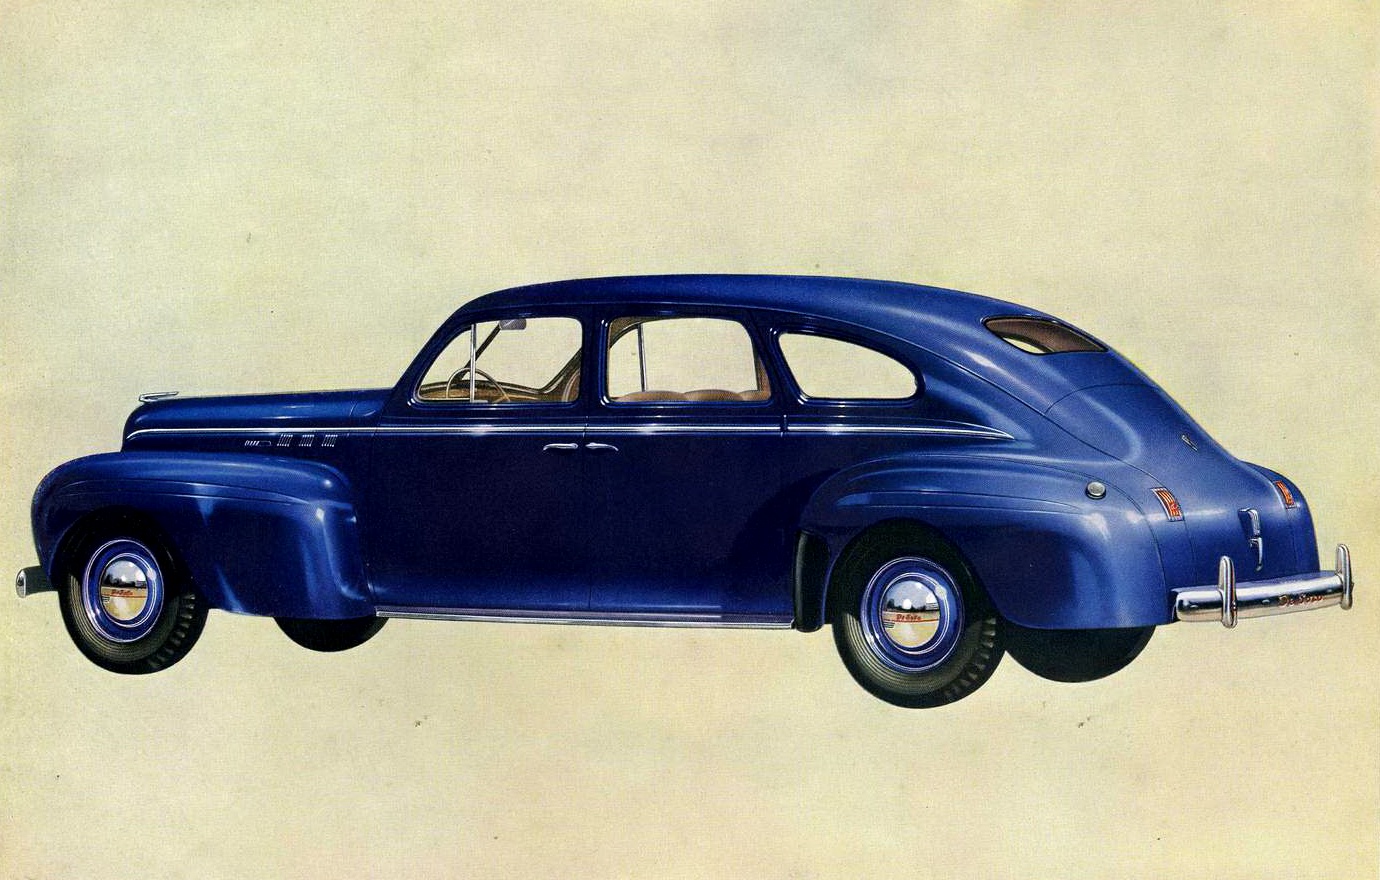 1940 De Soto Vintage Cars Ads